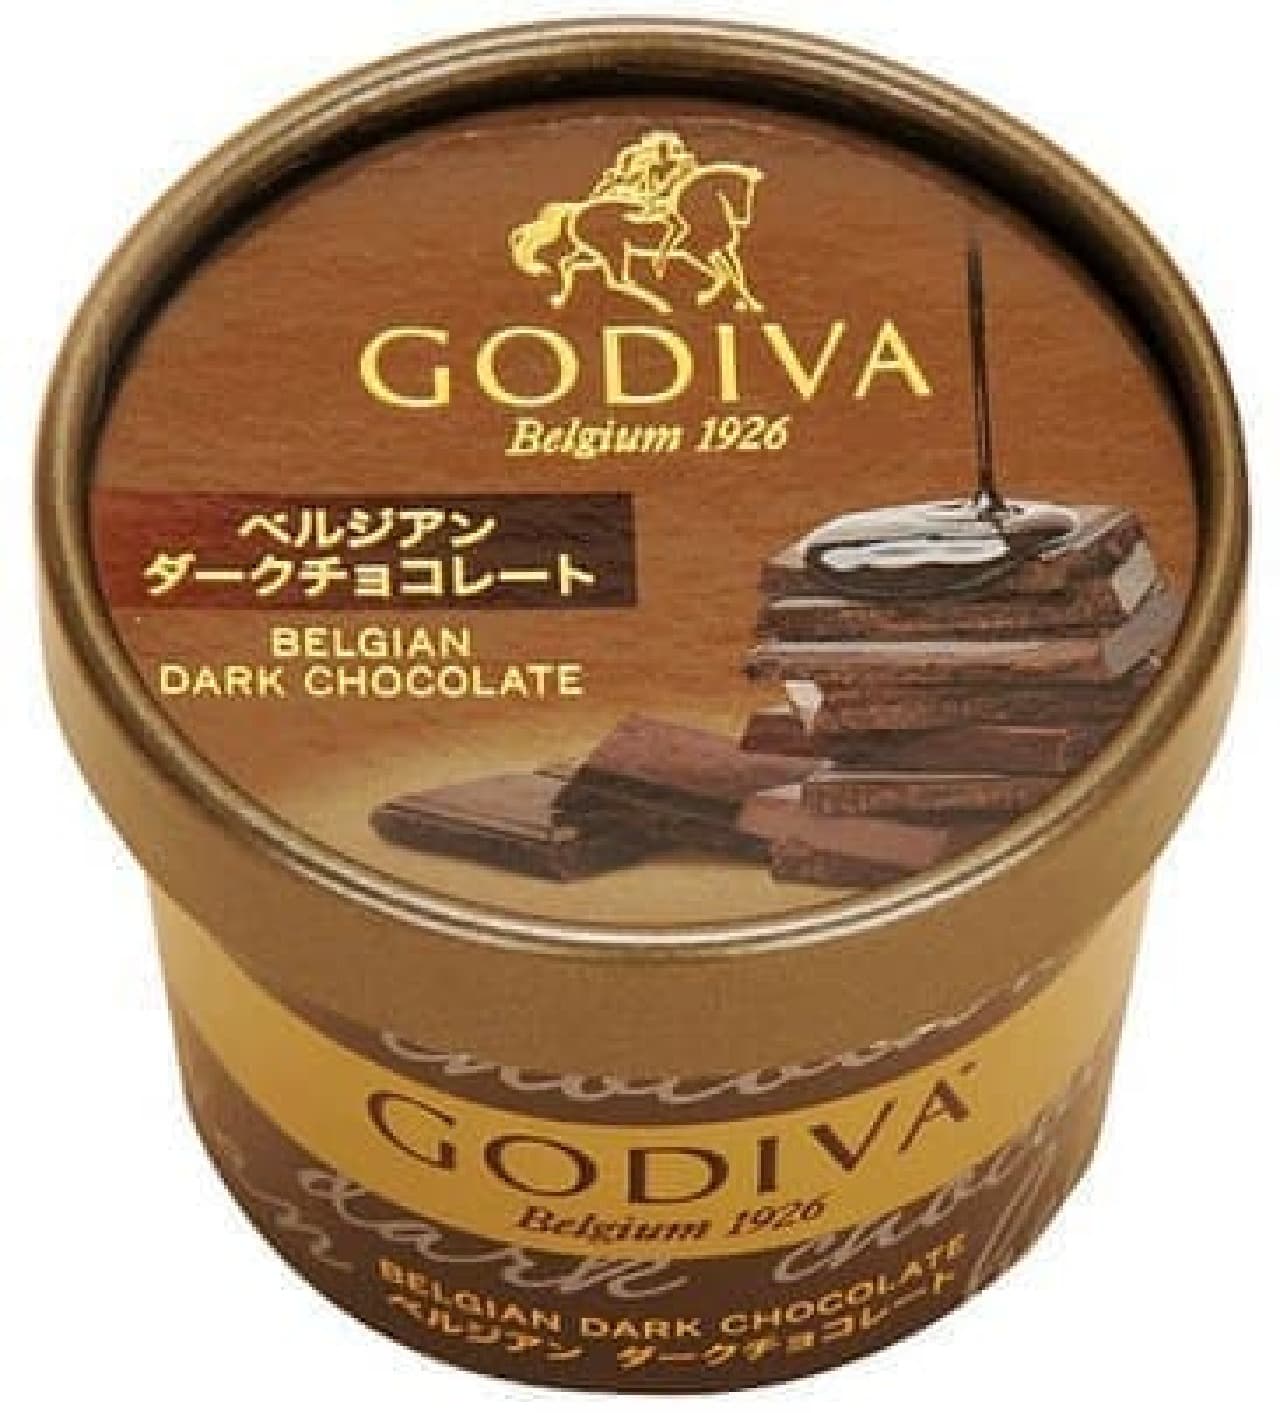 ファミリーマート「GODIVA カップアイス ベルジアンダークチョコレート」